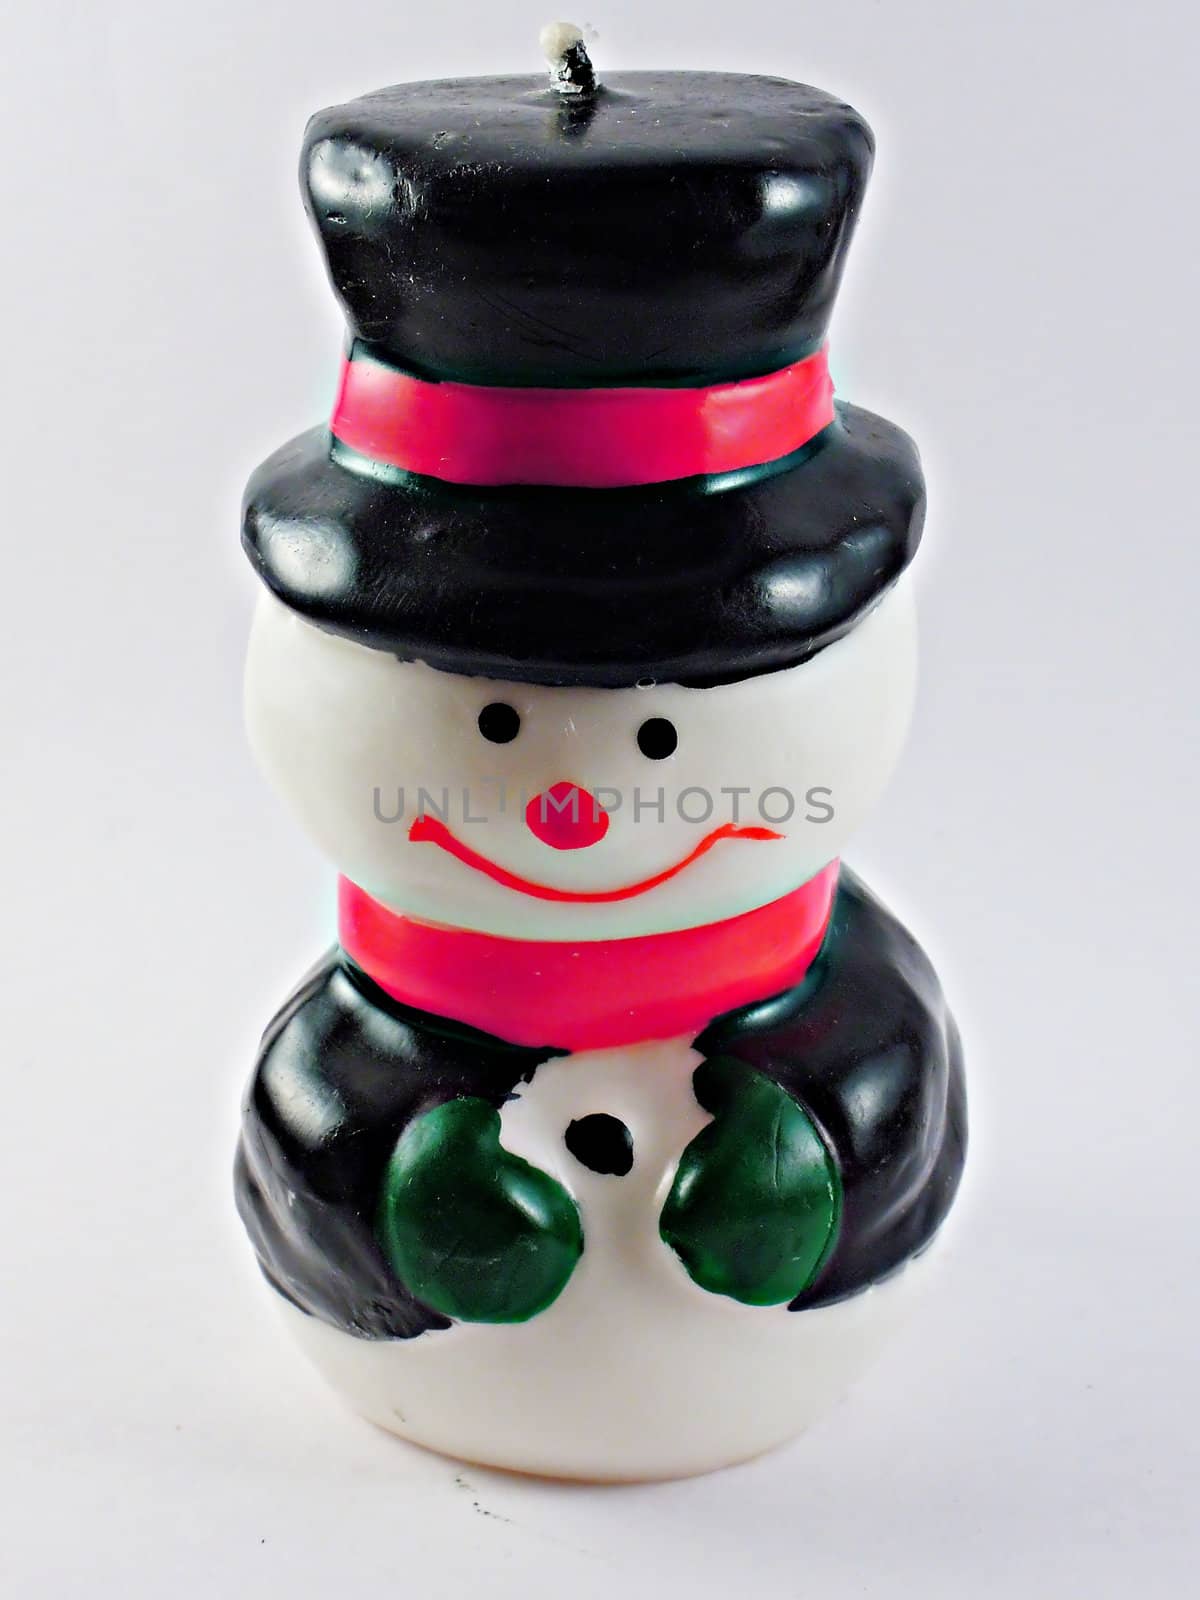 Toy snowman by Picnichok